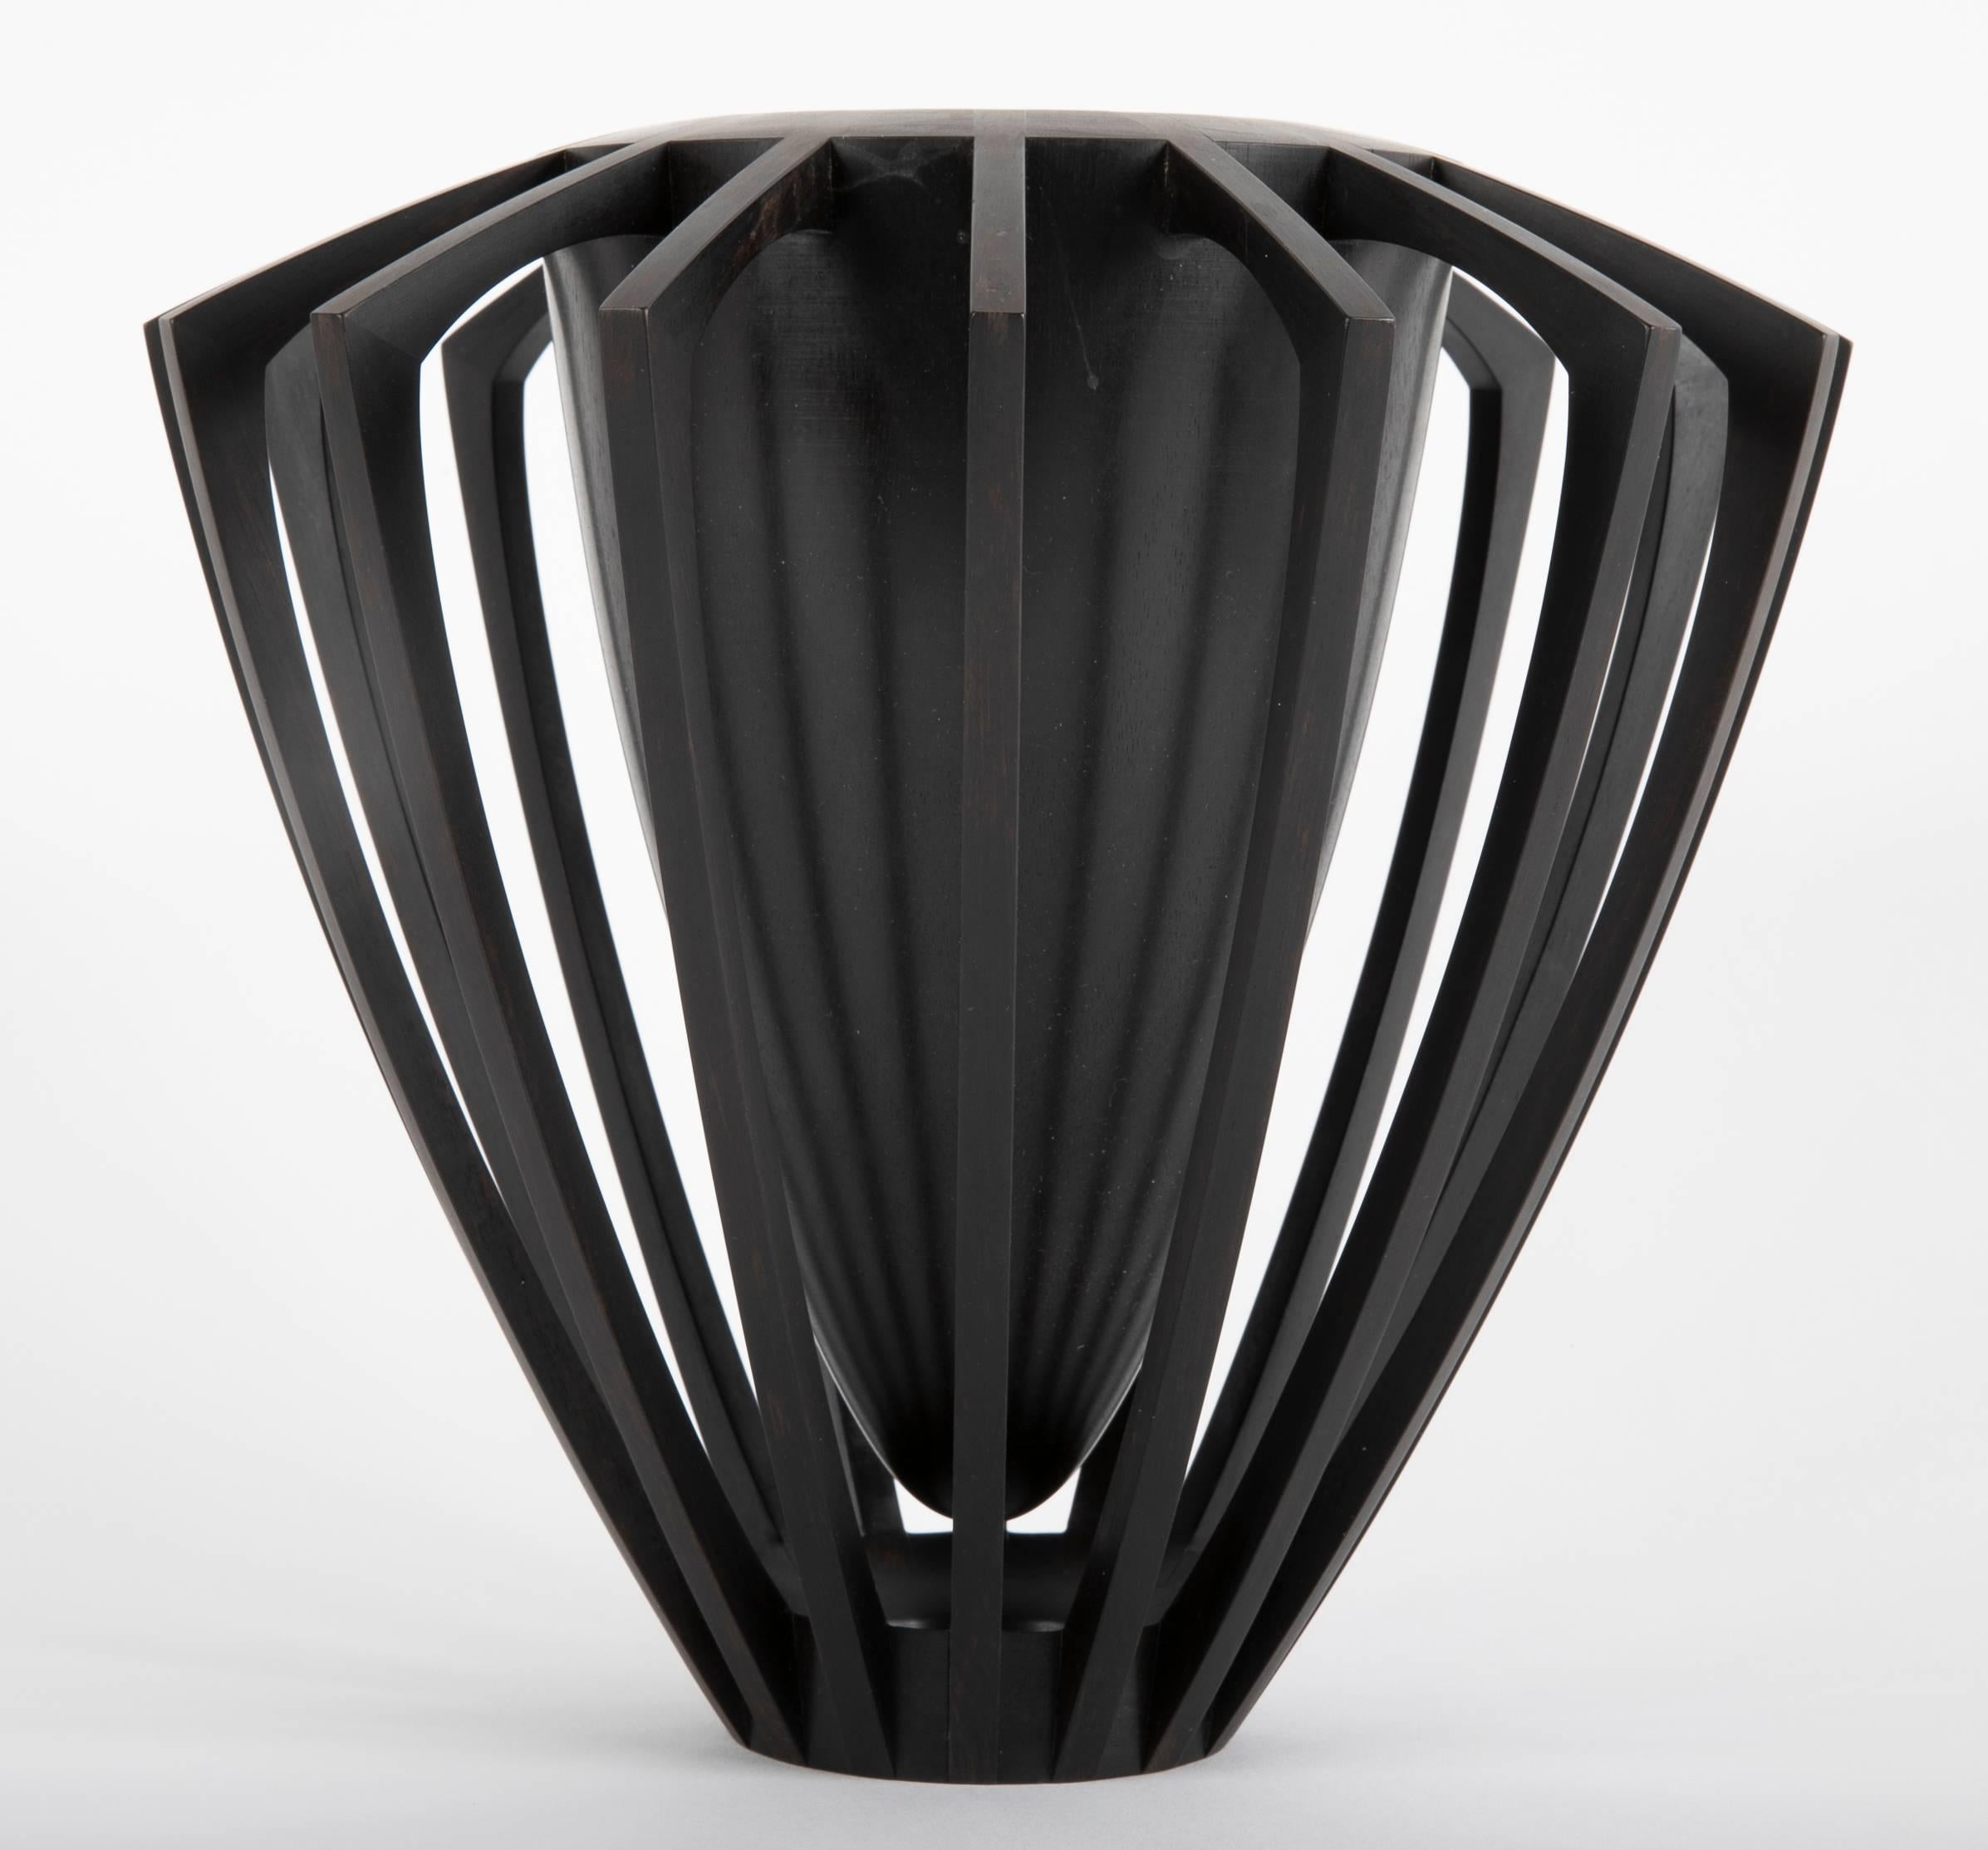 An ebony vase / sculpture made by Mark Nantz. Titled 